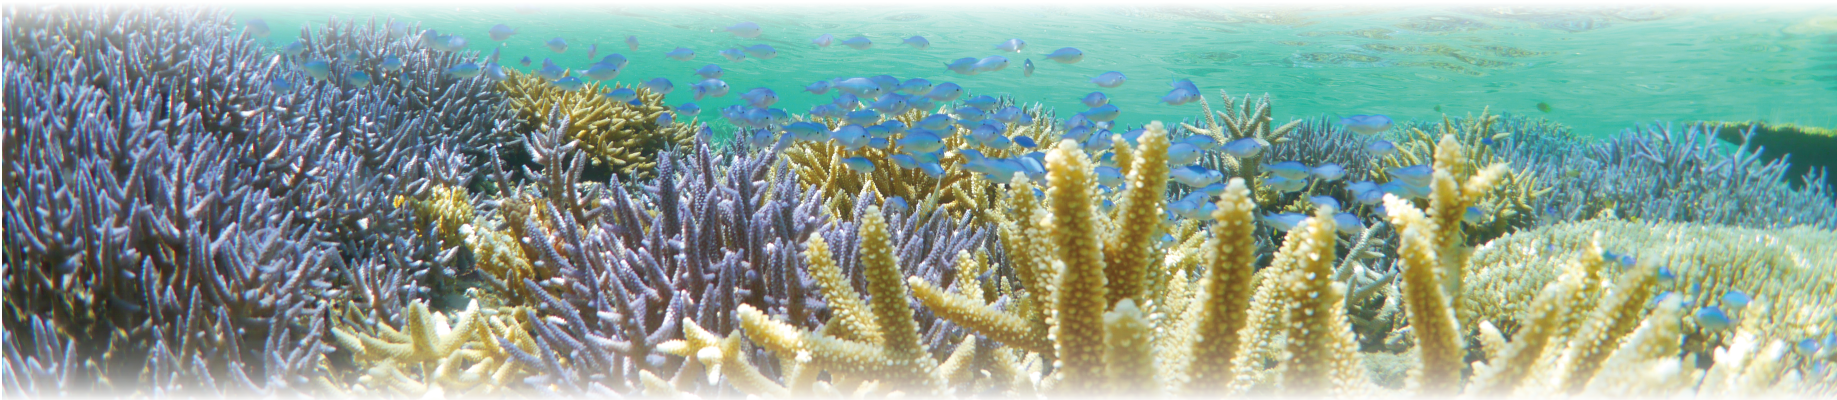 カラフルな珊瑚